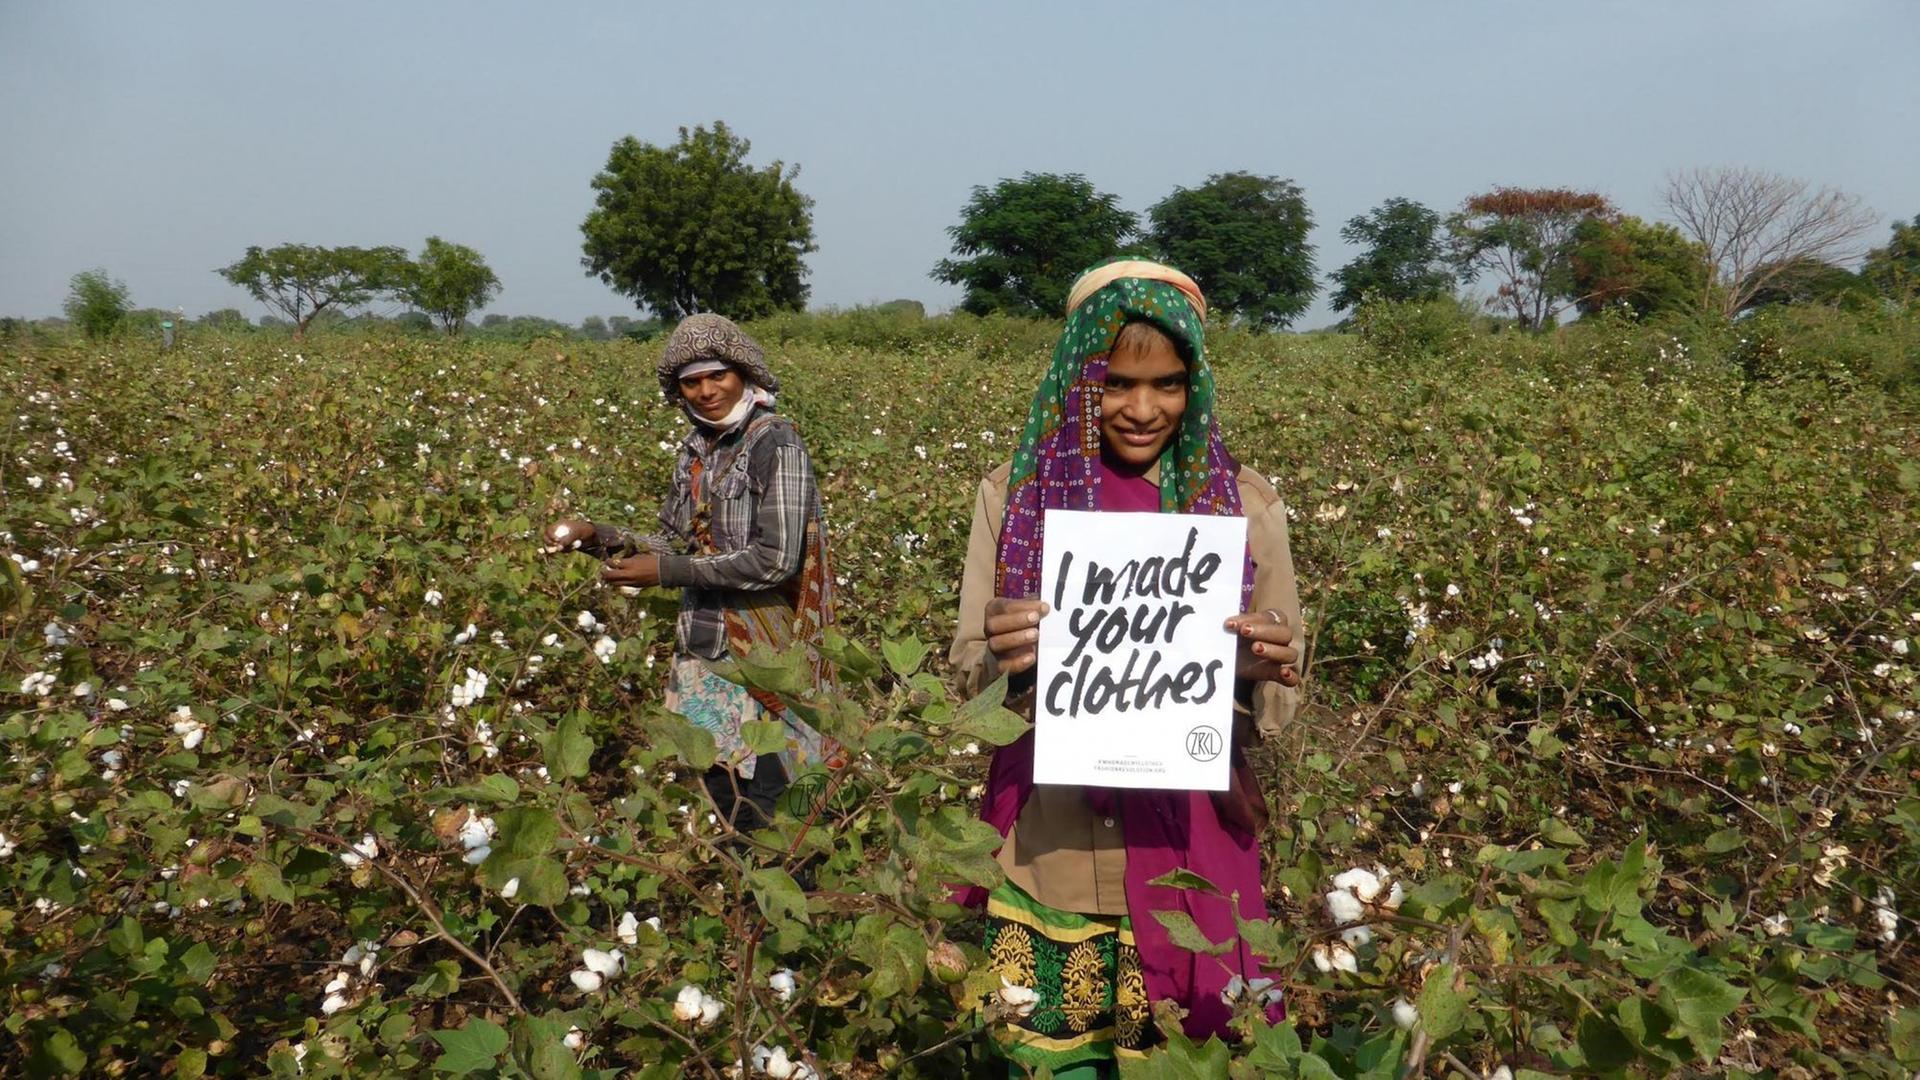 Zwei Arbeiterinnen auf einem Baumwollfeld halten ein Schild hoch auf dem steht "ich habe deine Kleidung gemacht".